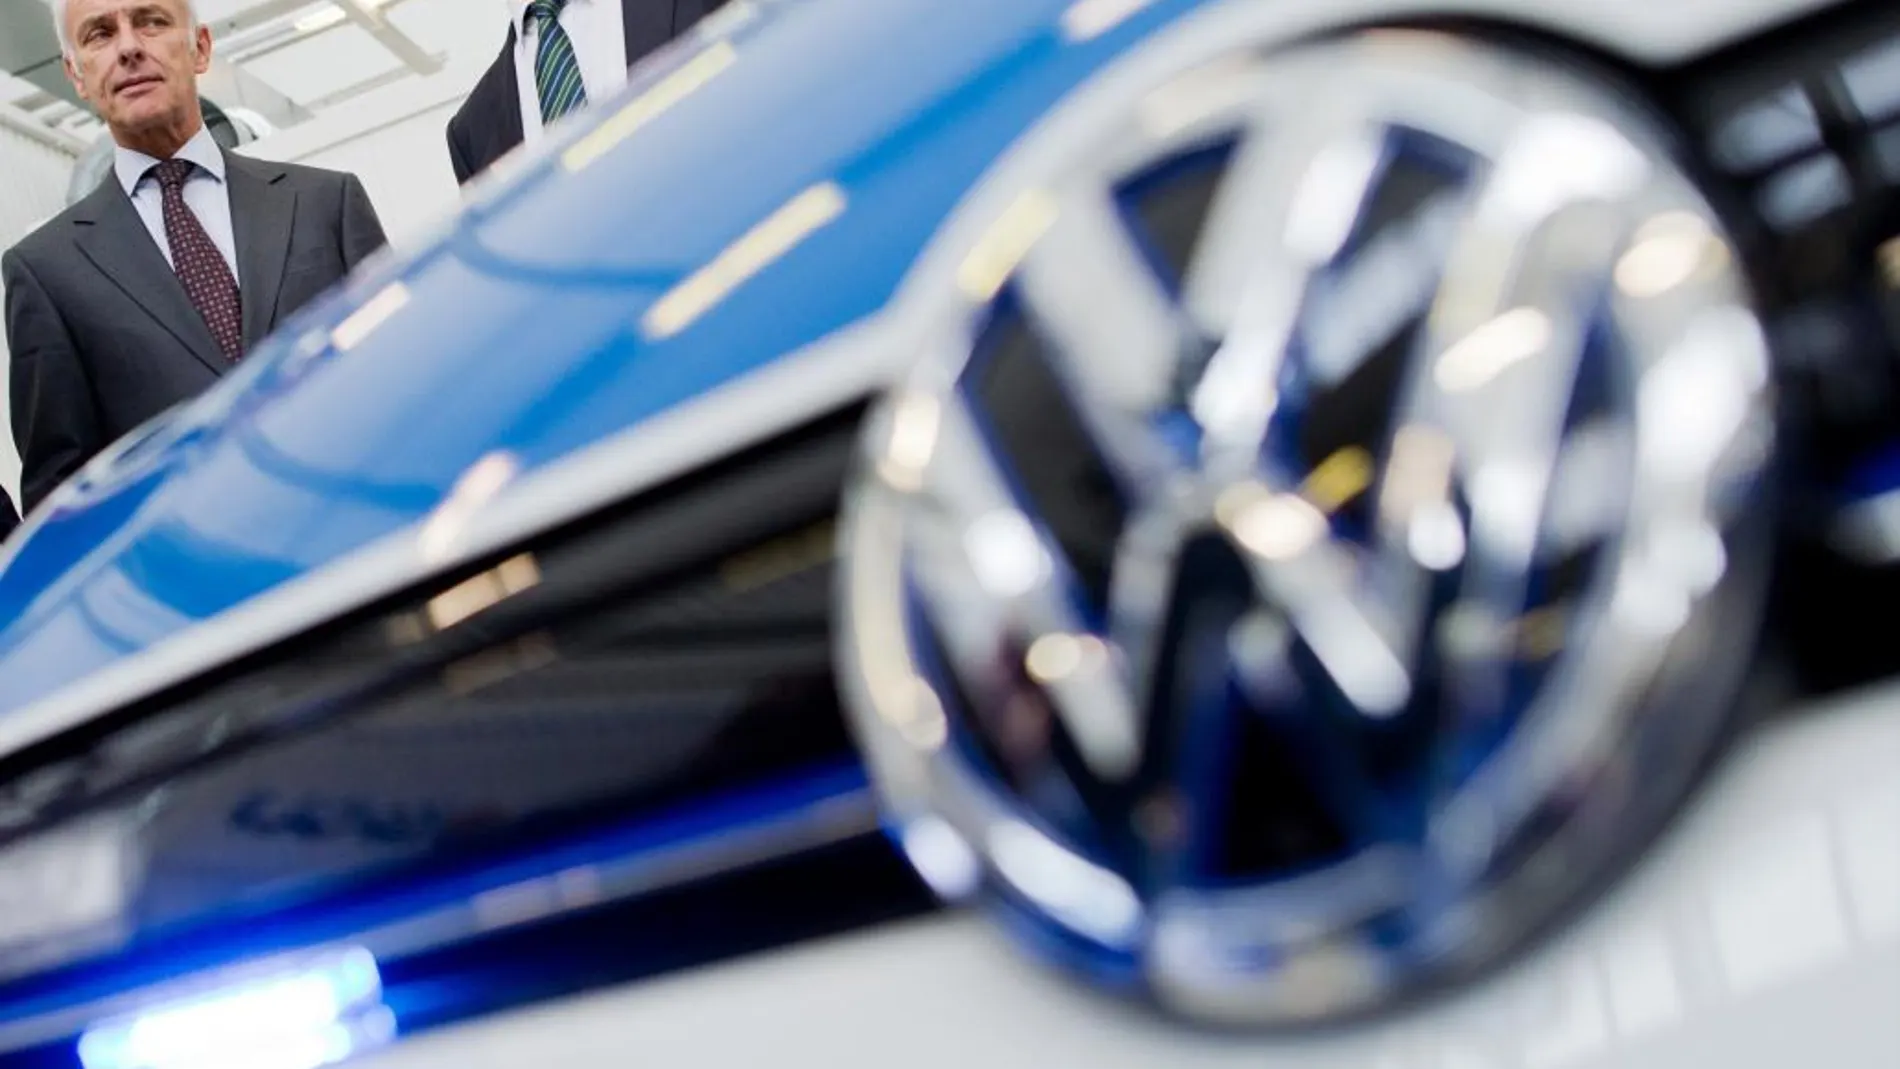 El presidente de Volkswagen, Matthias Mueller, posa junto a un nuevo modelo.